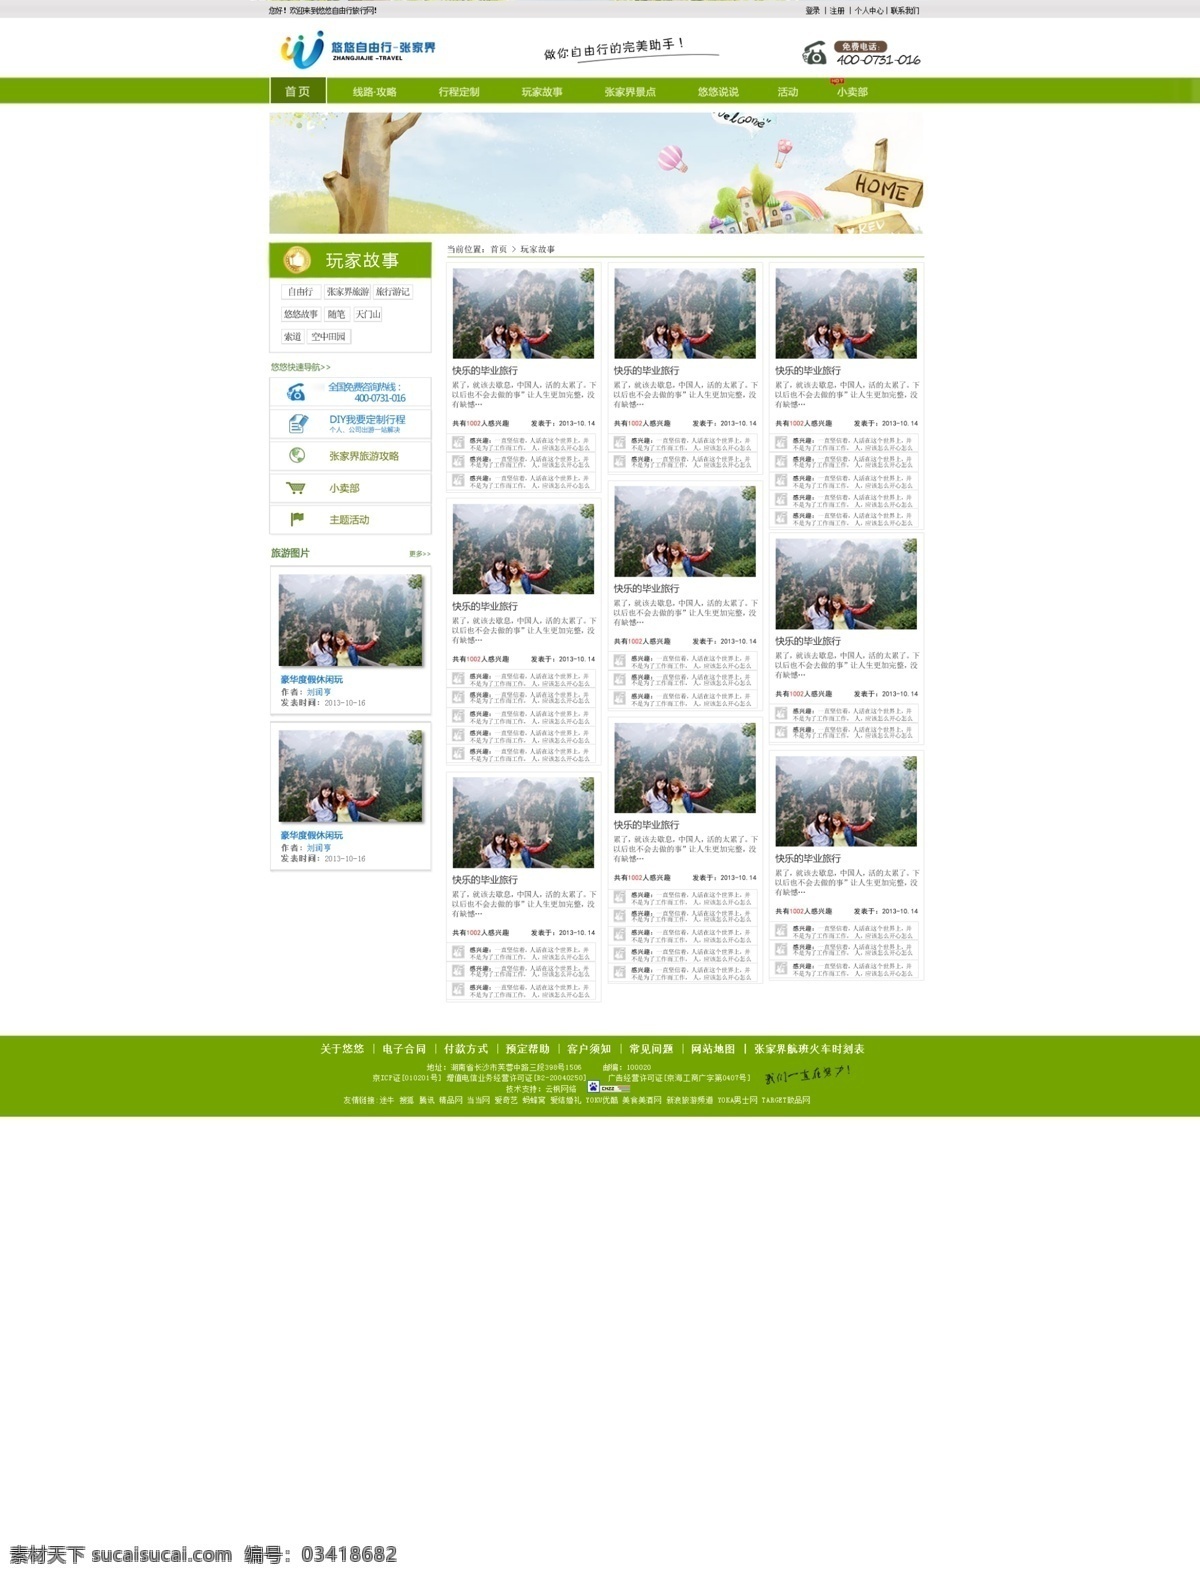 框架 旅游 绿色 网页模板 网站 宣传栏 源文件 中文模板 张家界 旅游网站 模板下载 海报 景点介绍 自由行 其他海报设计